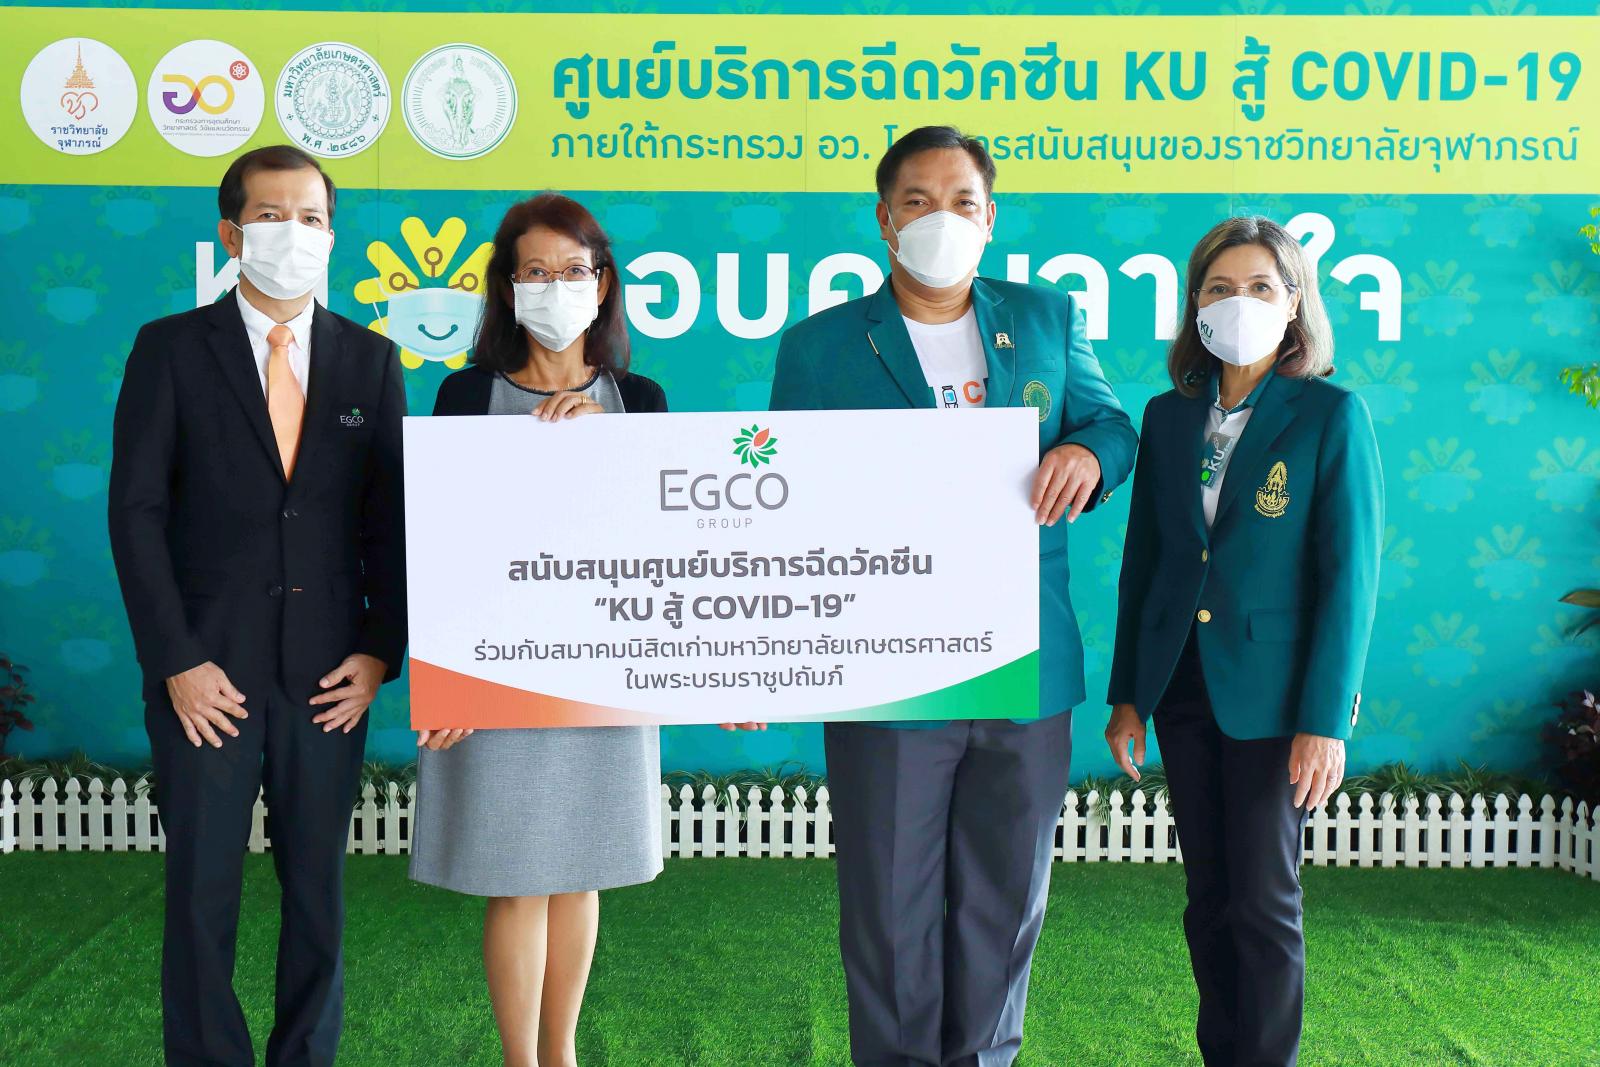 เอ็กโก กรุ๊ป สนับสนุนศูนย์บริการฉีดวัคซีน “KU สู้ COVID-19” ร่วมสร้างภูมิคุ้มกันหมู่ในประเทศไทย